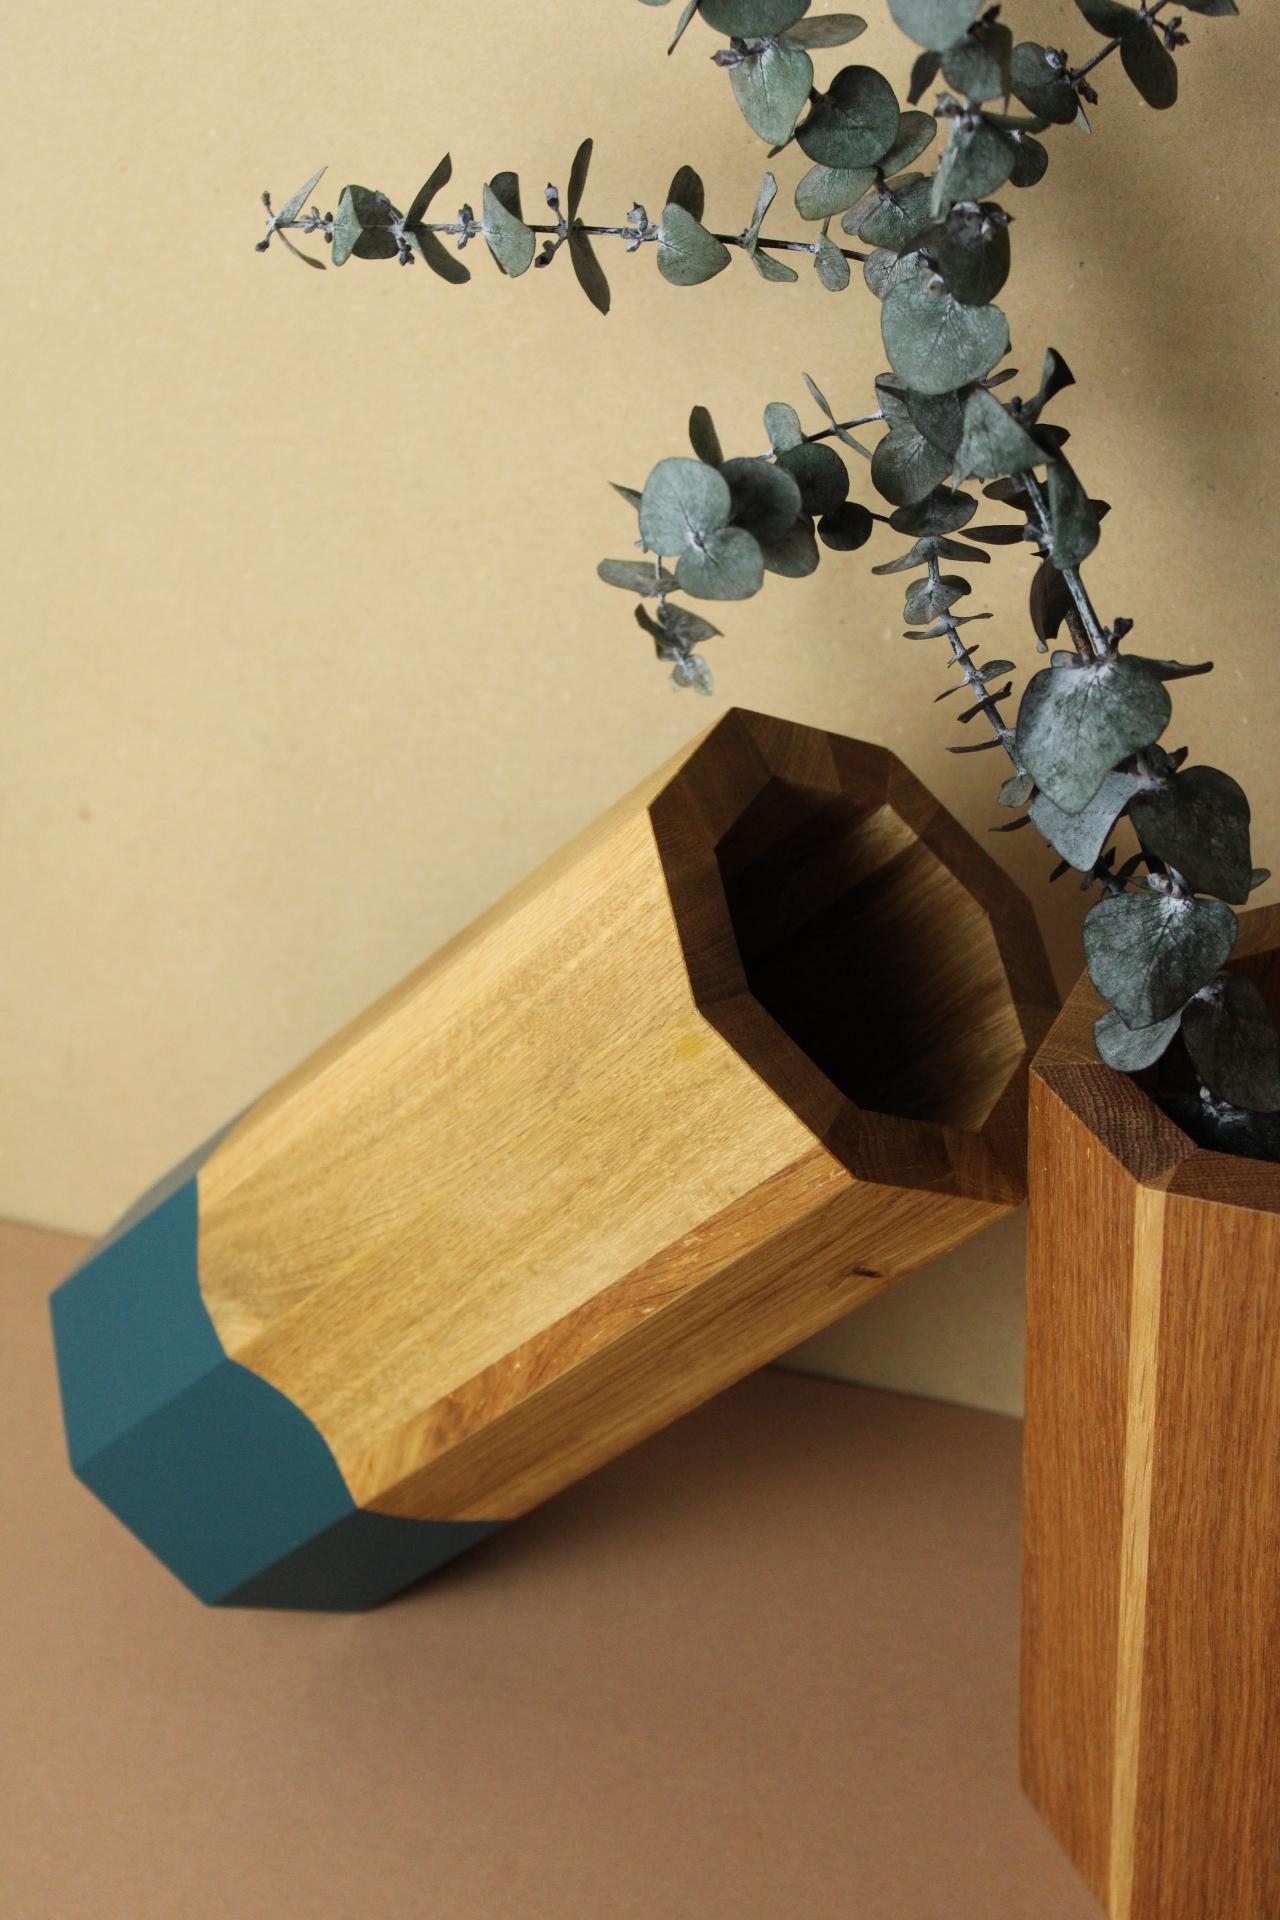 Zeitlos schön sind die Vasen Ecki vom Designer @cohlendorf_designstudio
Jede Vase ist handgefertigt und ein Unikat. 